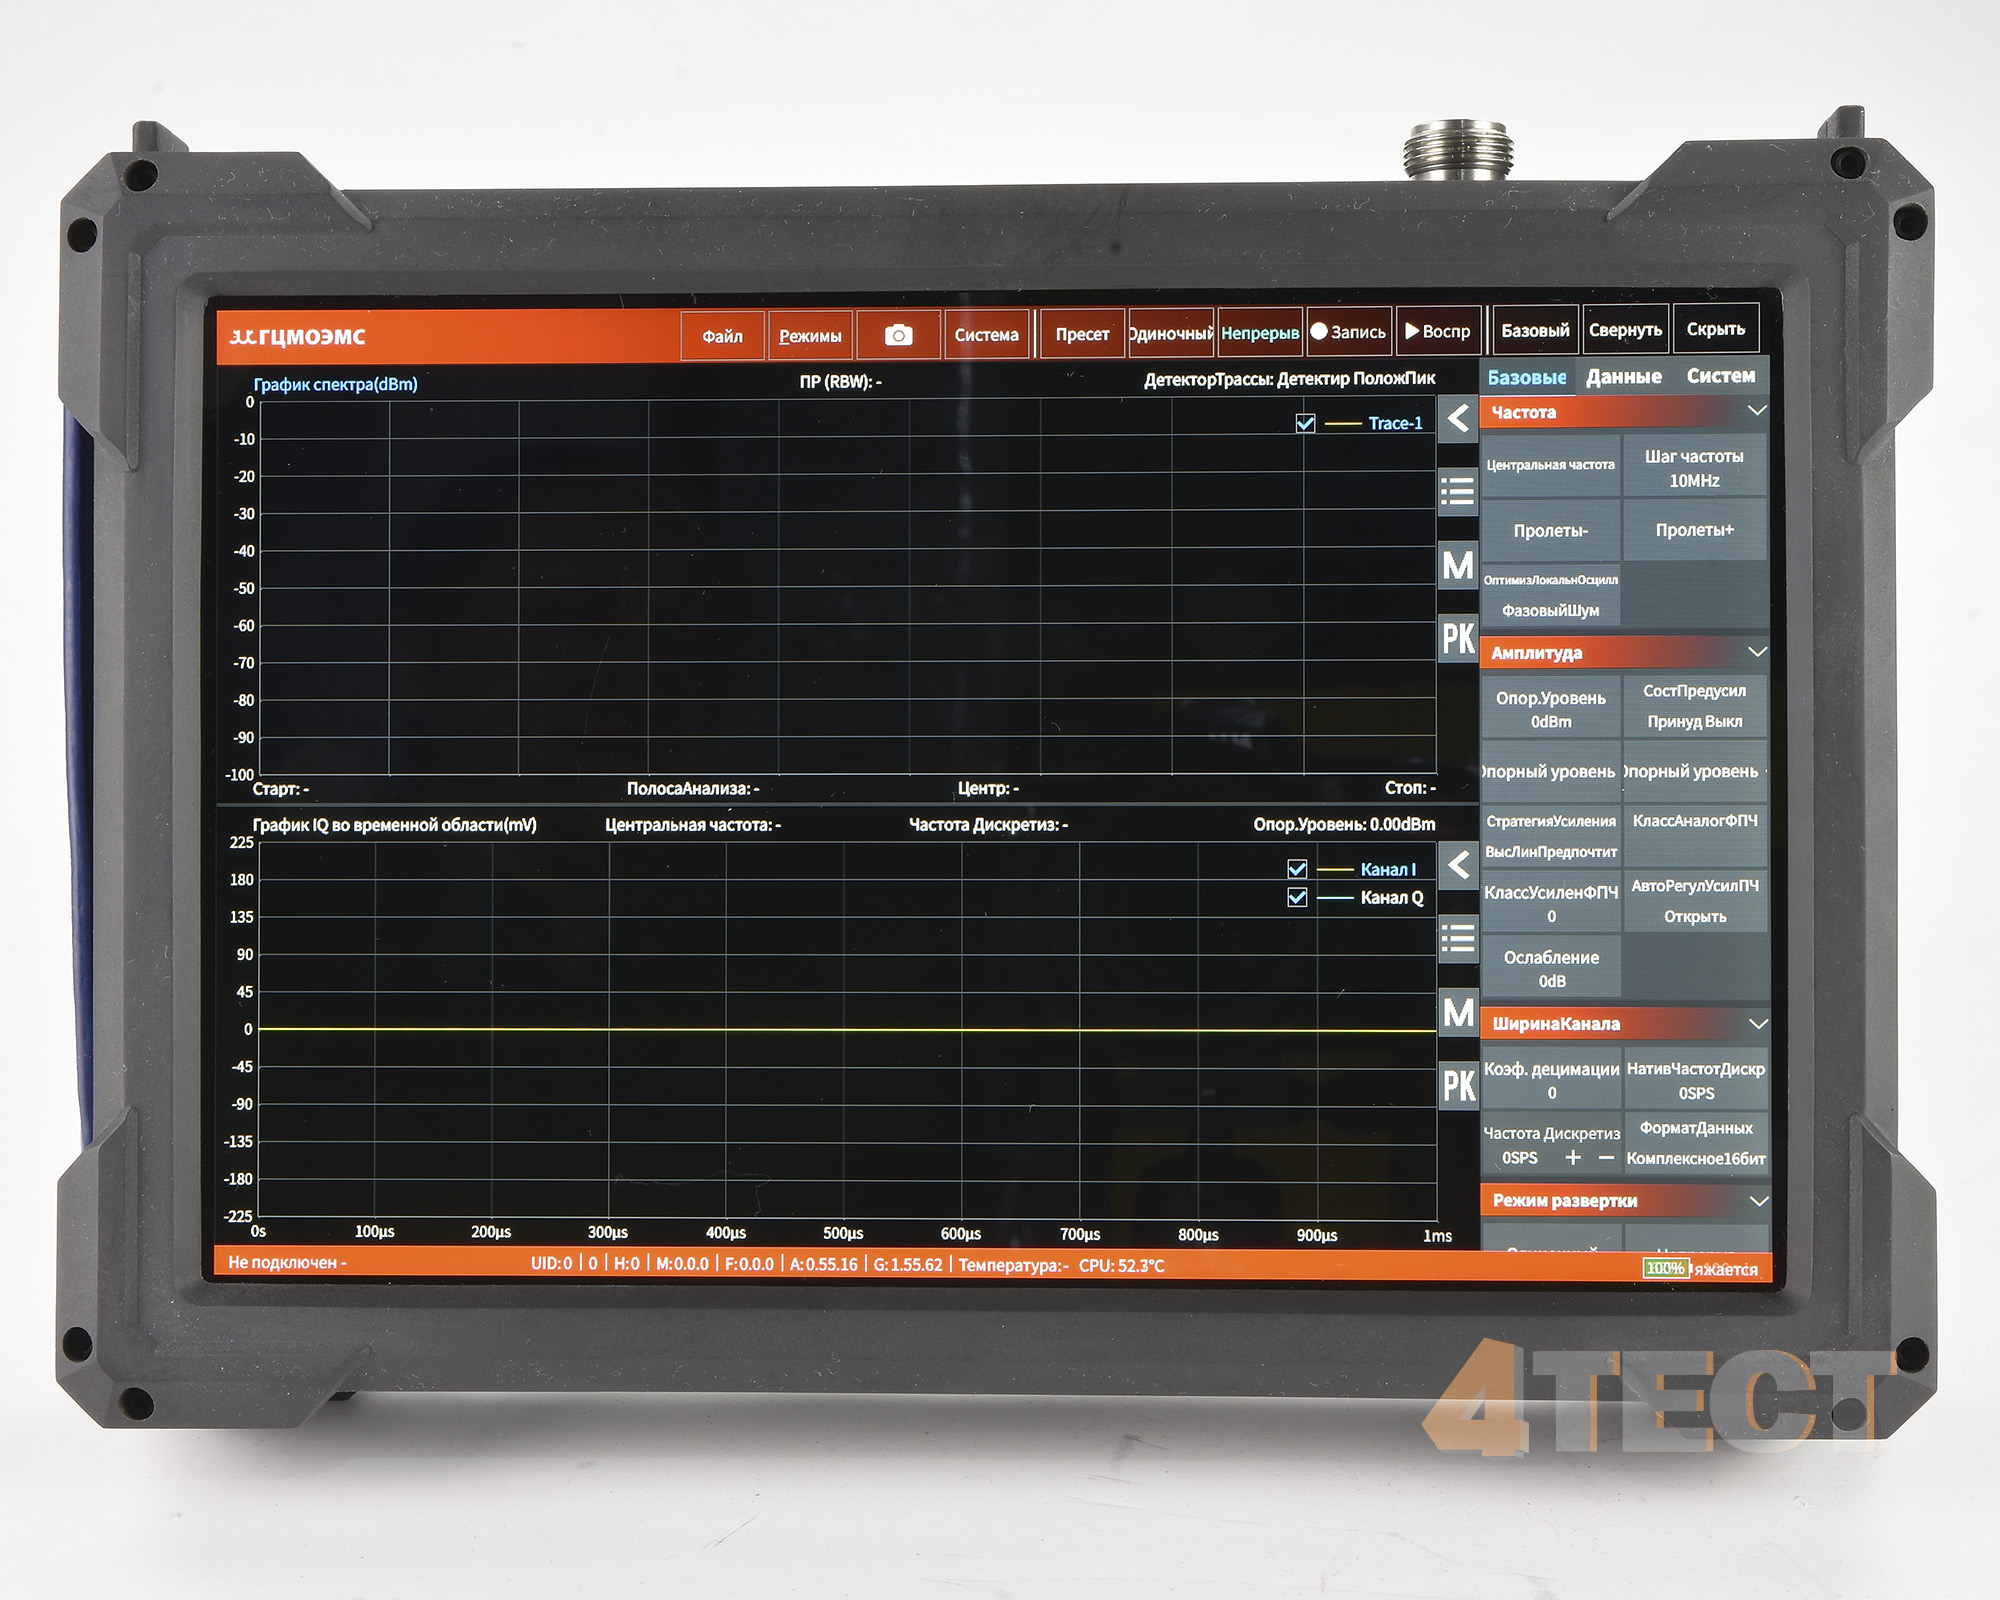 Портативный анализатор спектра реального времени
ГЦМО ЭМС АСРВ-20П
с диапазоном от 9 кГц до 20 ГГц